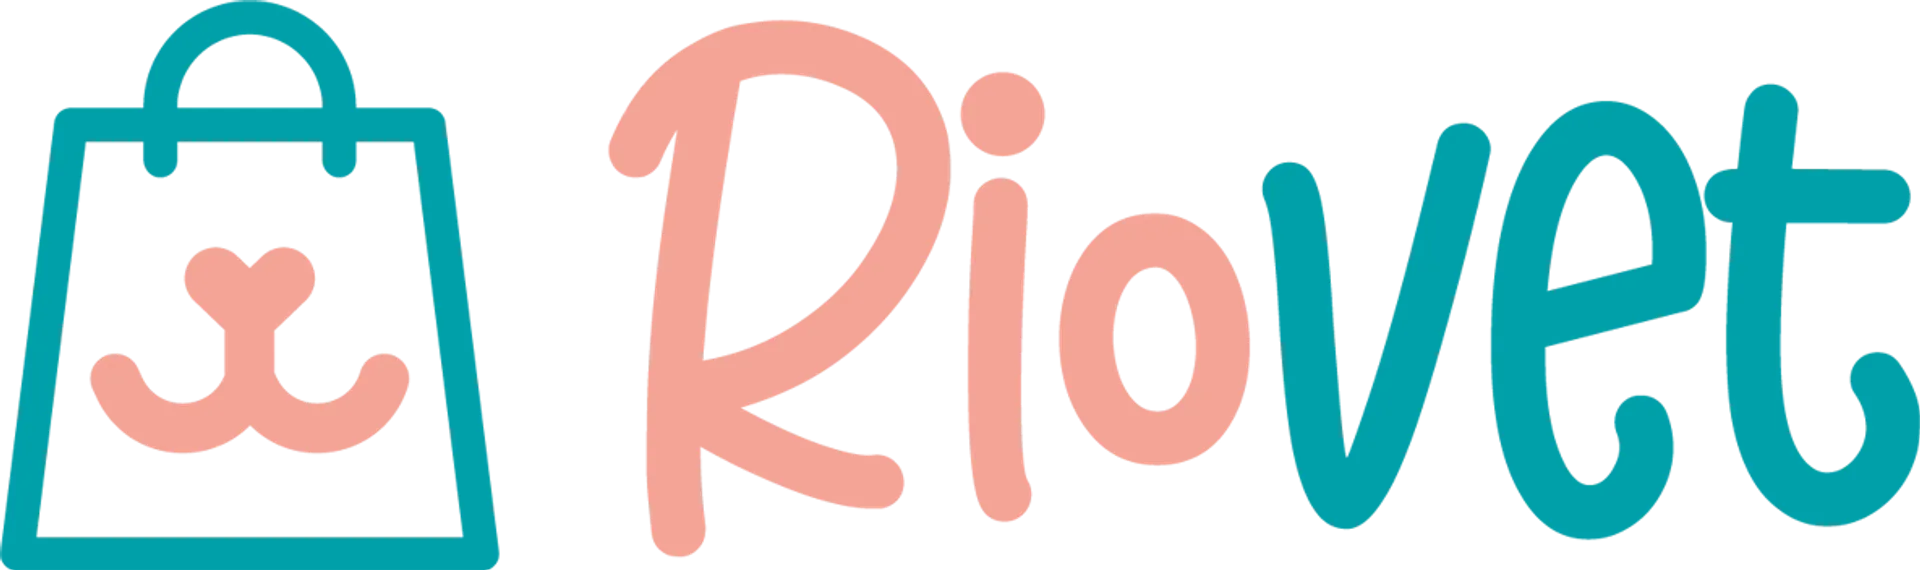 RIOVET logo